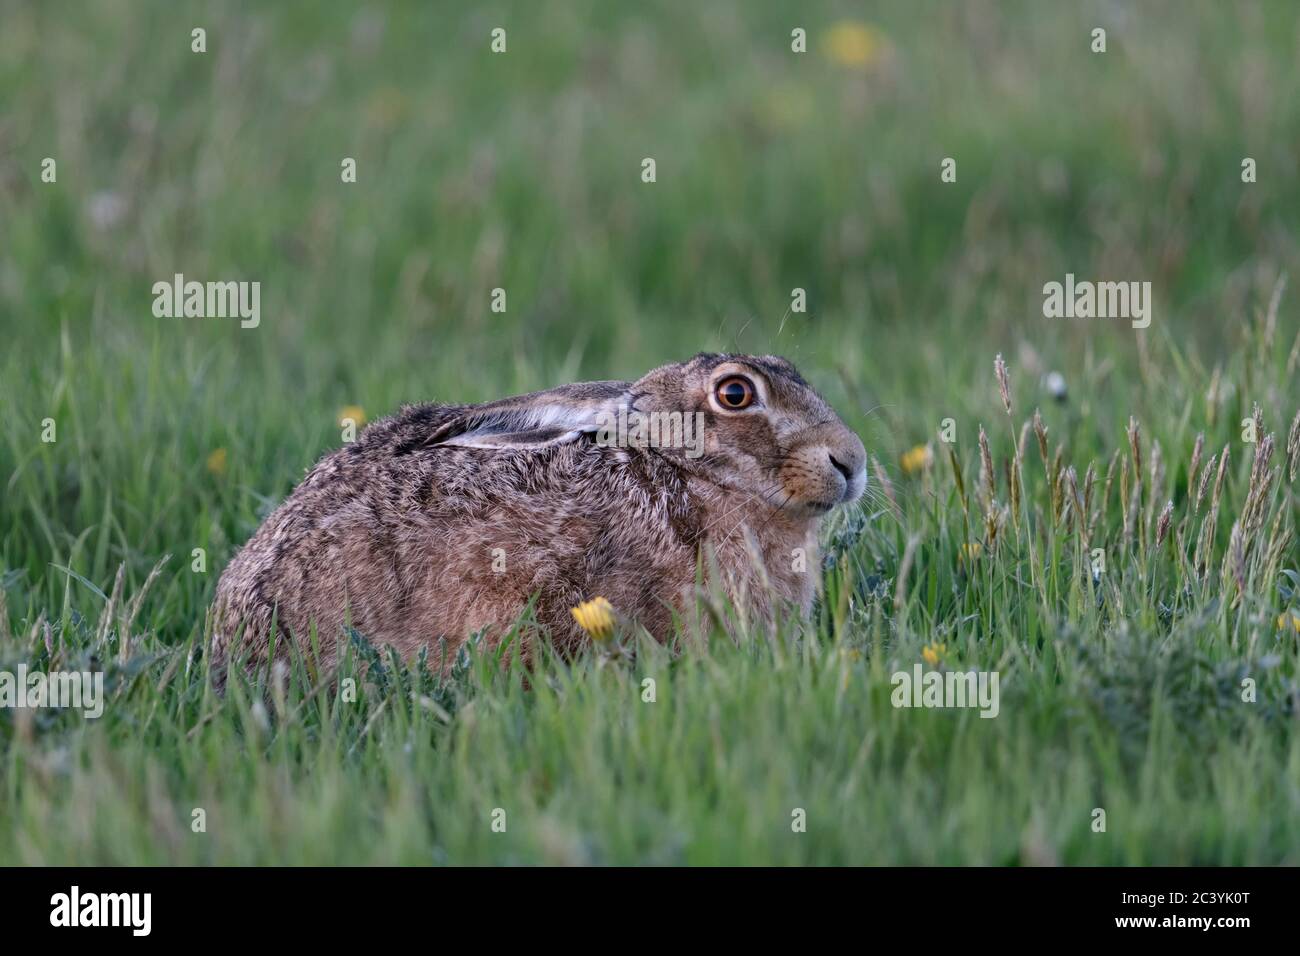 Brown Lepre / Europea Lepre / Feldhase ( Lepus europaeus ) seduto in erba, prato primaverile, accovacciata, nascondendo con set back orecchie, la fauna selvatica, l'Europa. Foto Stock